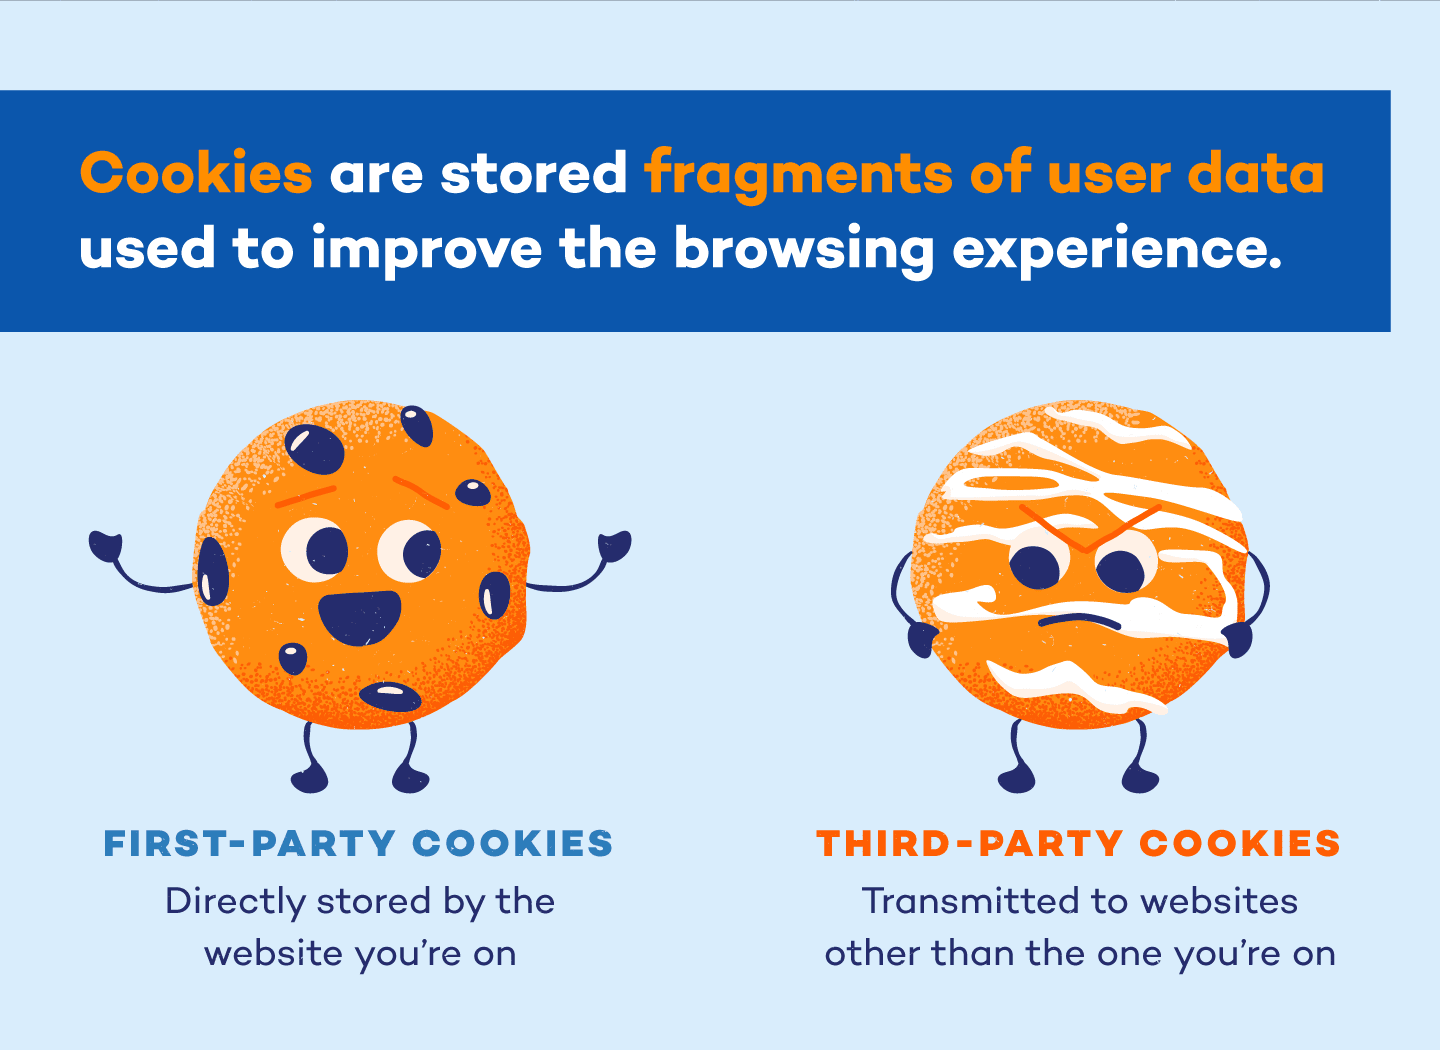 Tout comme leurs homologues cuits au four, les cookies du web existent en plusieurs saveurs